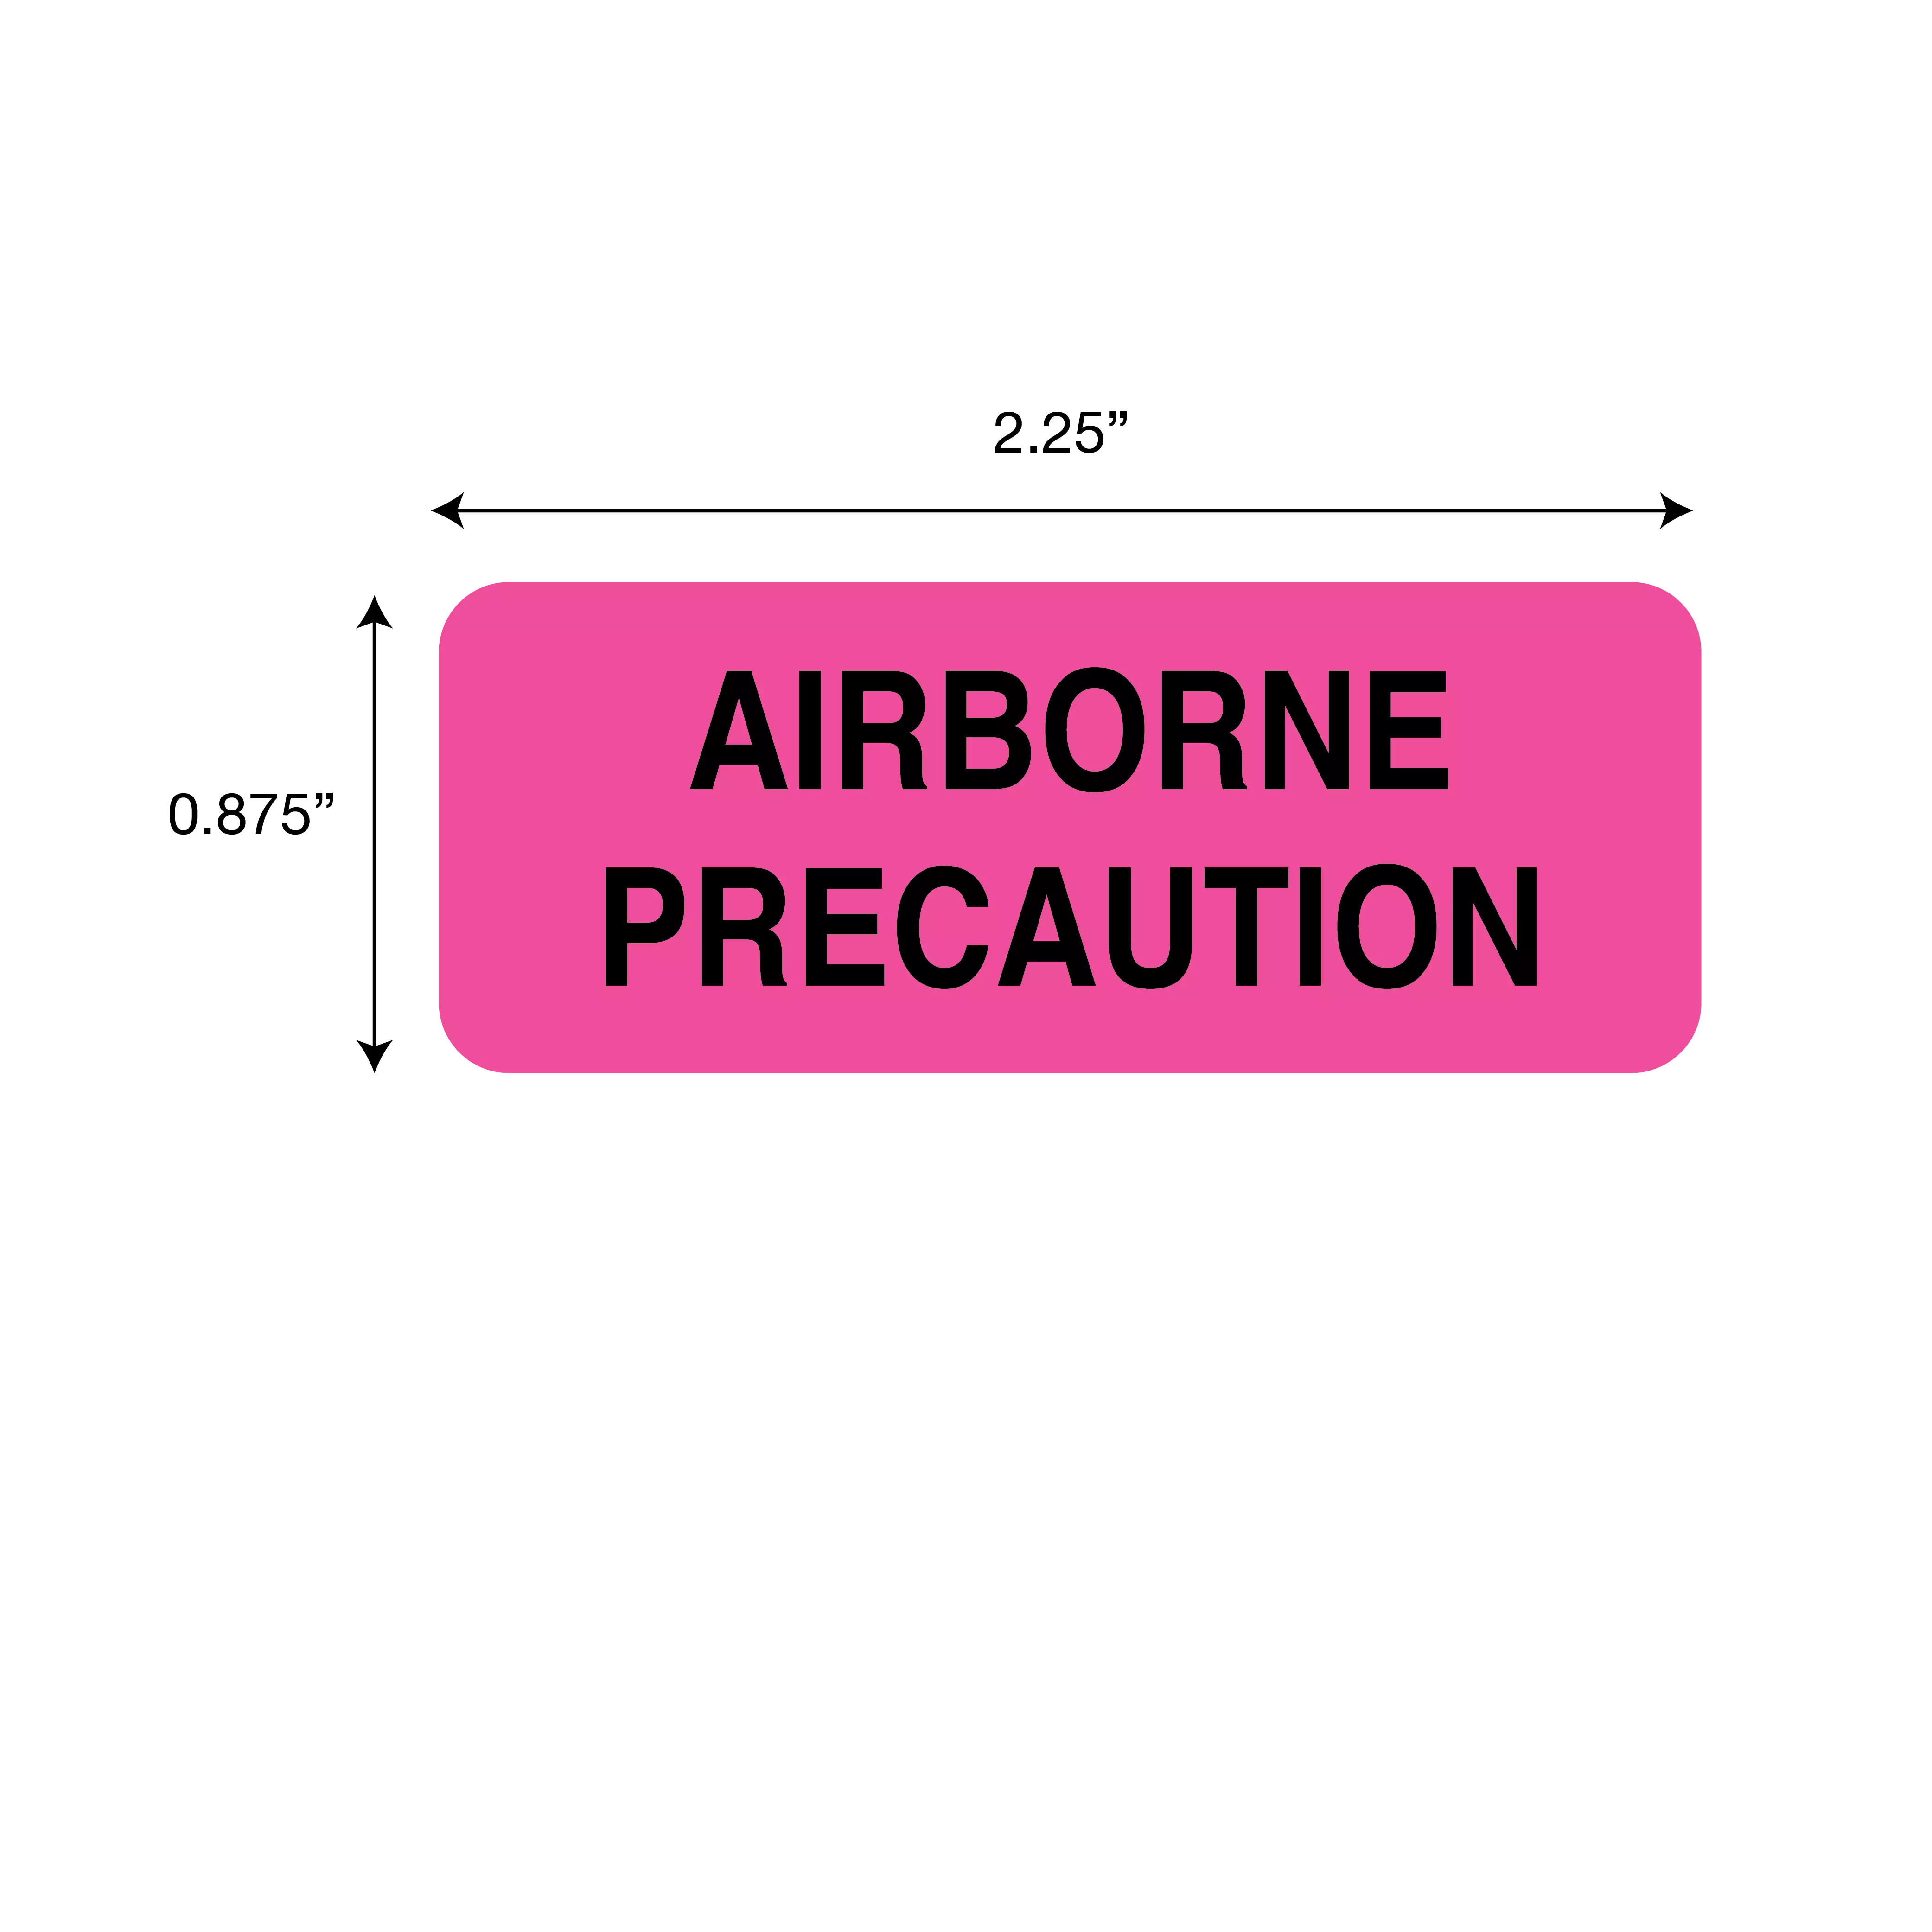 Precaution Labels - Airborne Precaution